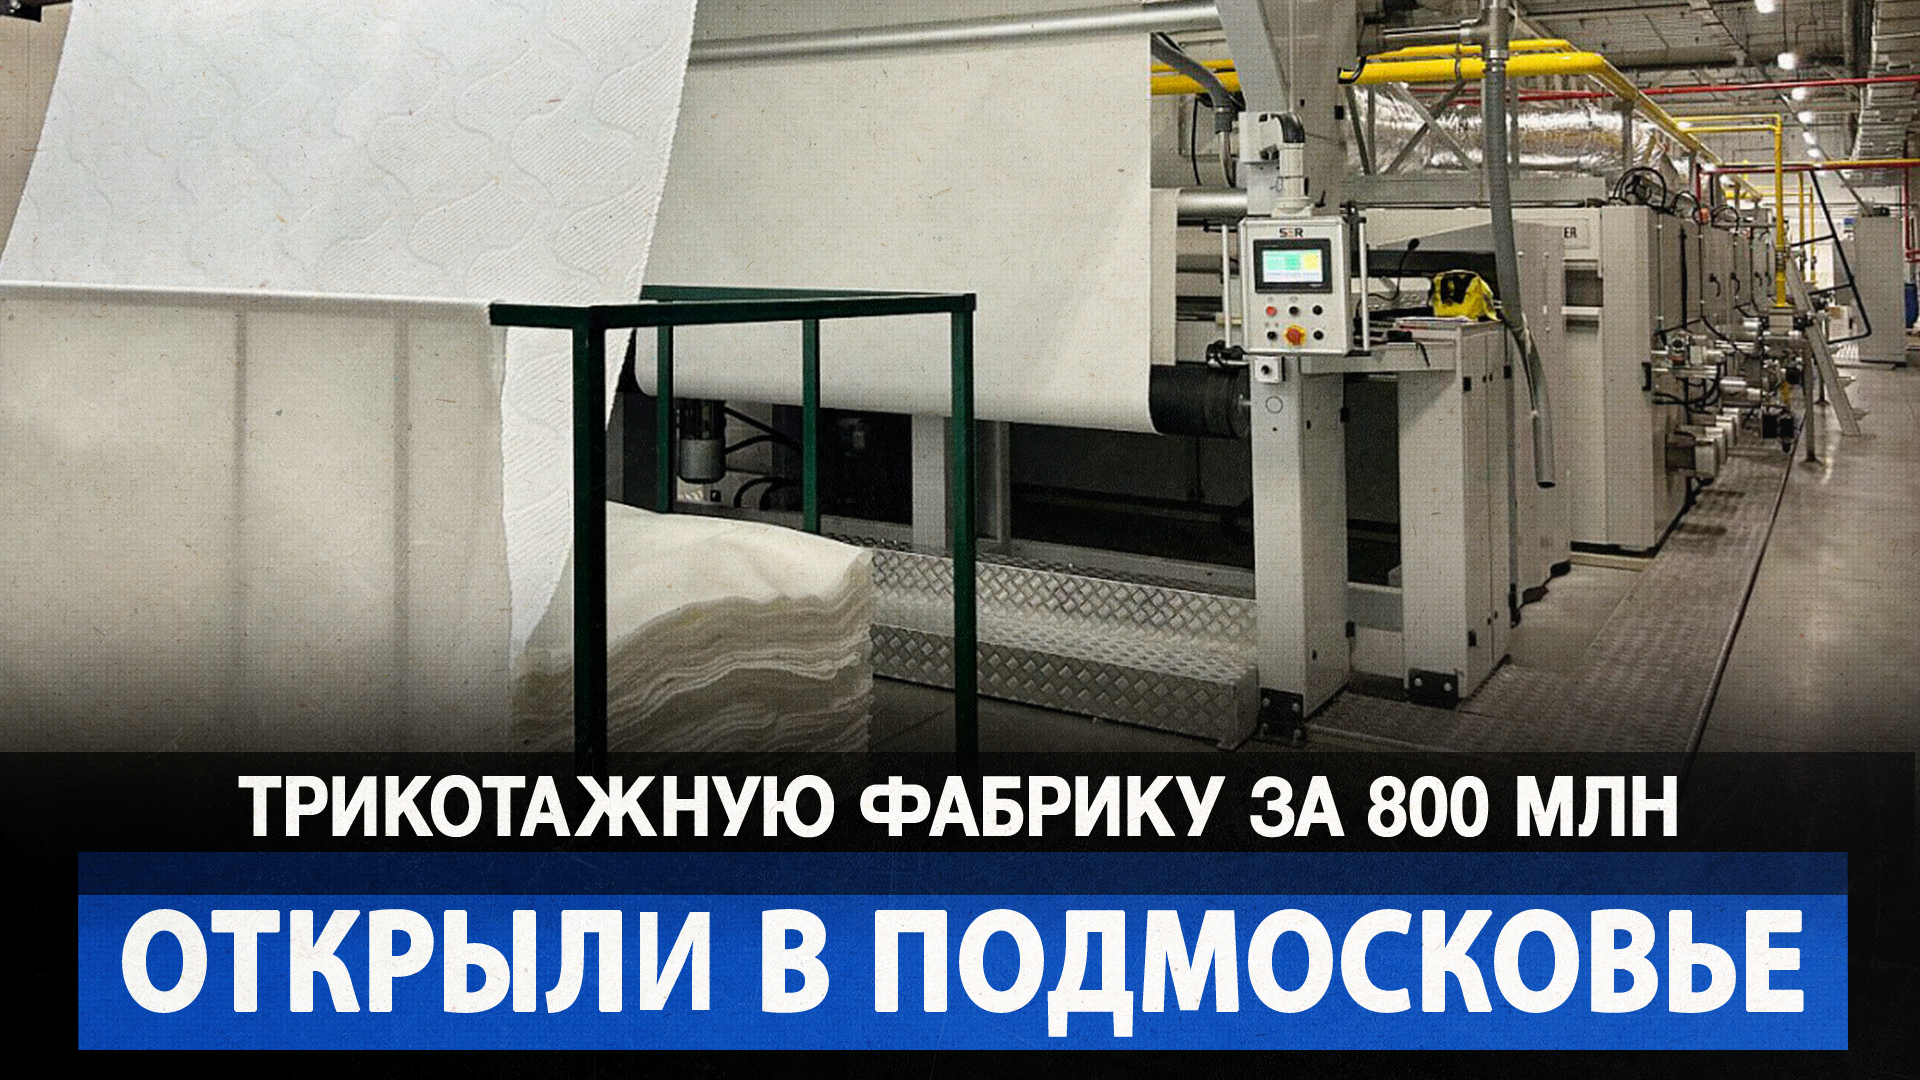 Трикотажную фабрику за 800 млн открыли в Подмосковье